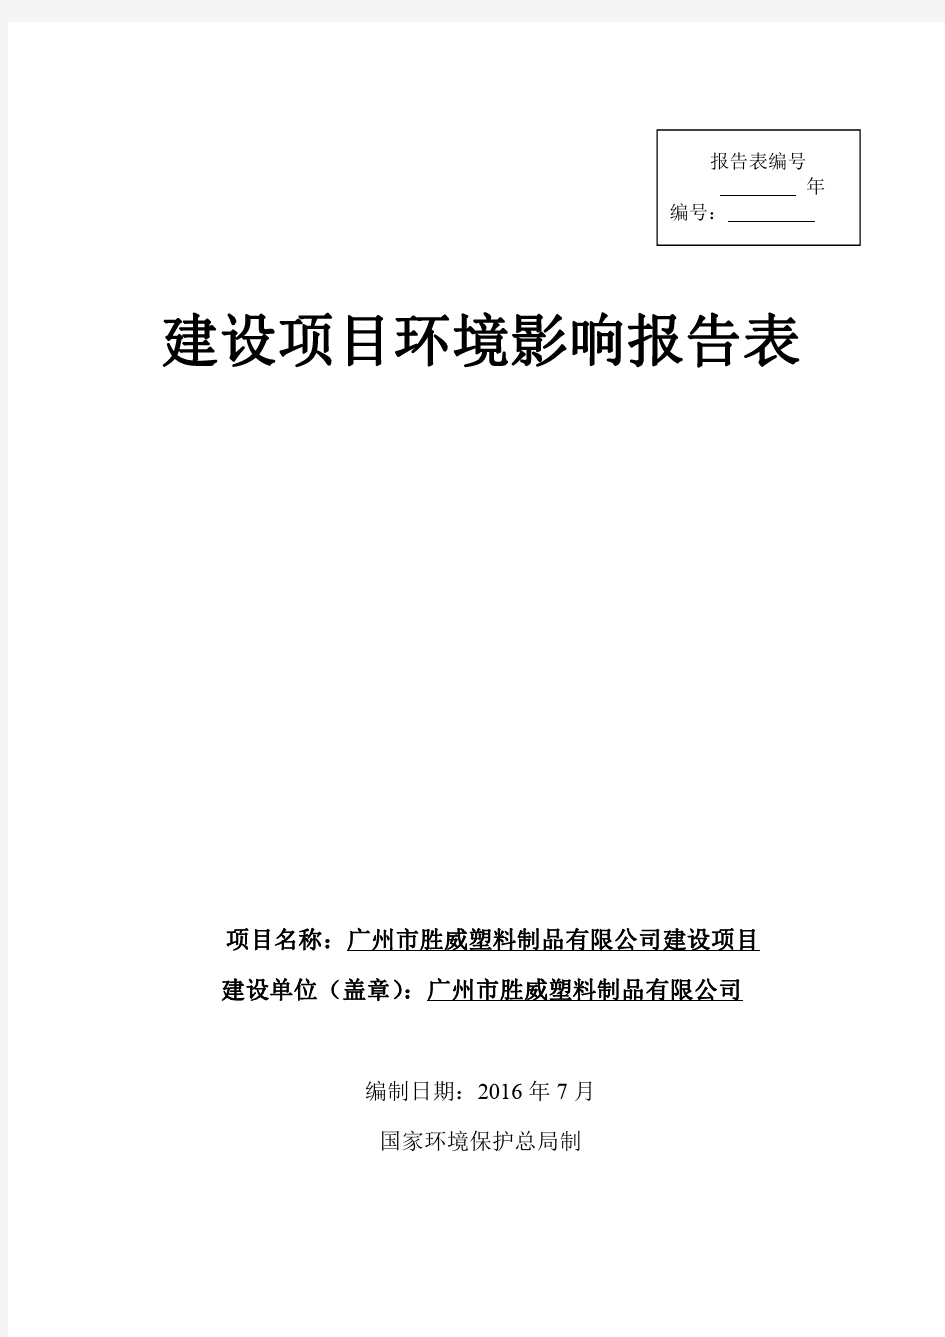 广州市胜威塑料制品 公司建设项目环评报告表